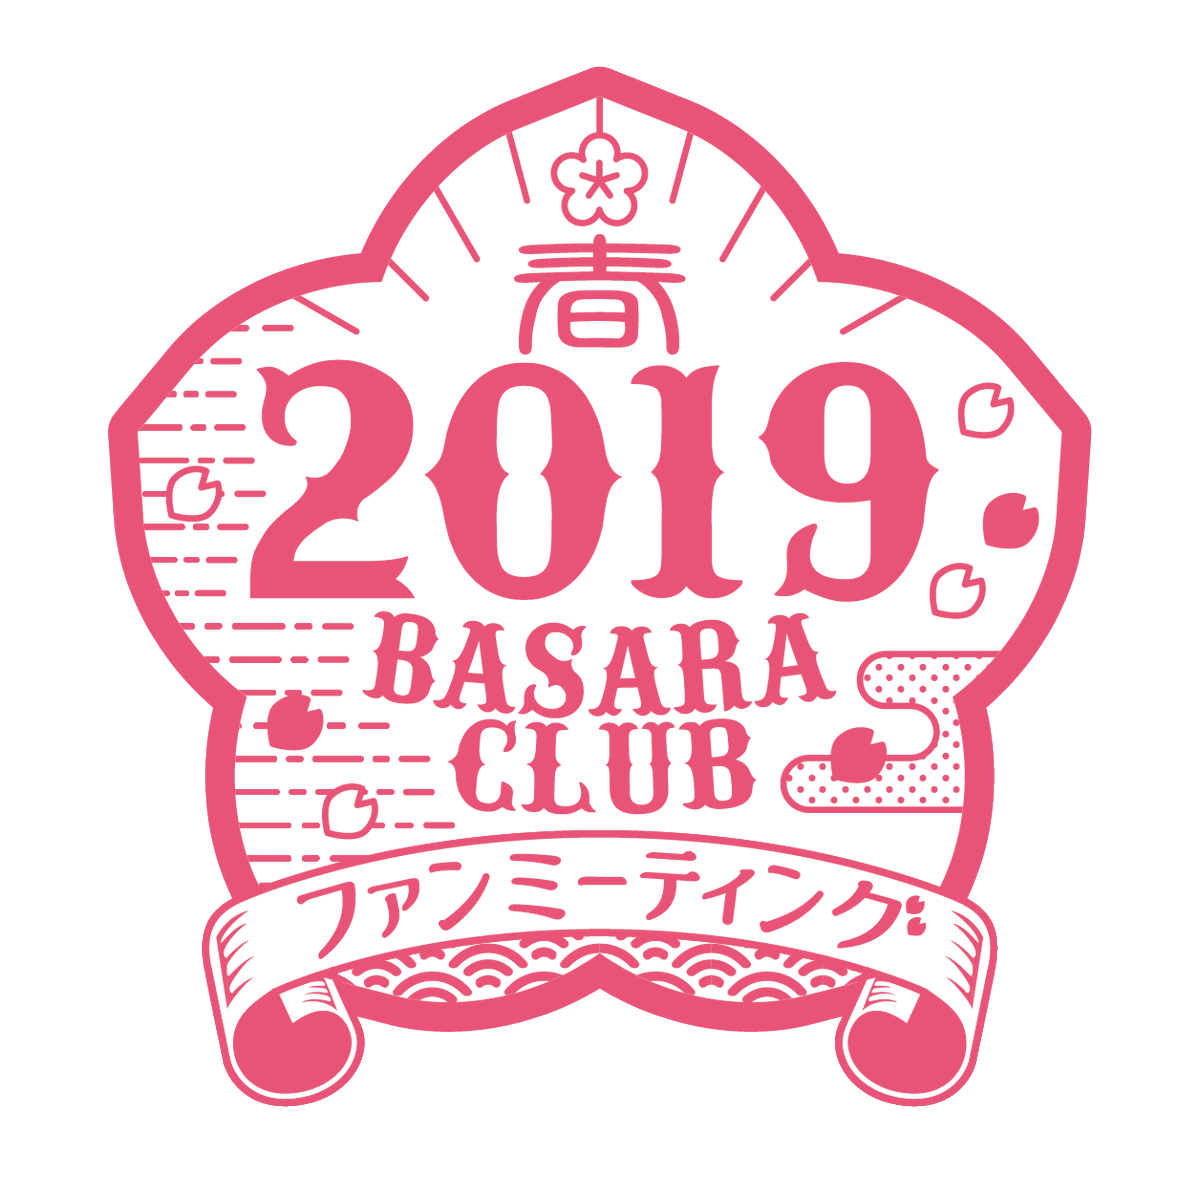 戦国basara シリーズ公式 Basara Club ファンミーティング19春 の描き下ろしイラスト 第一弾を公開 セットのキャラを横に並べると2つのキャラの目線が合う 可愛いイラストに仕上がっております こちらのイラストを使用したグッズを制作中 お楽しみ